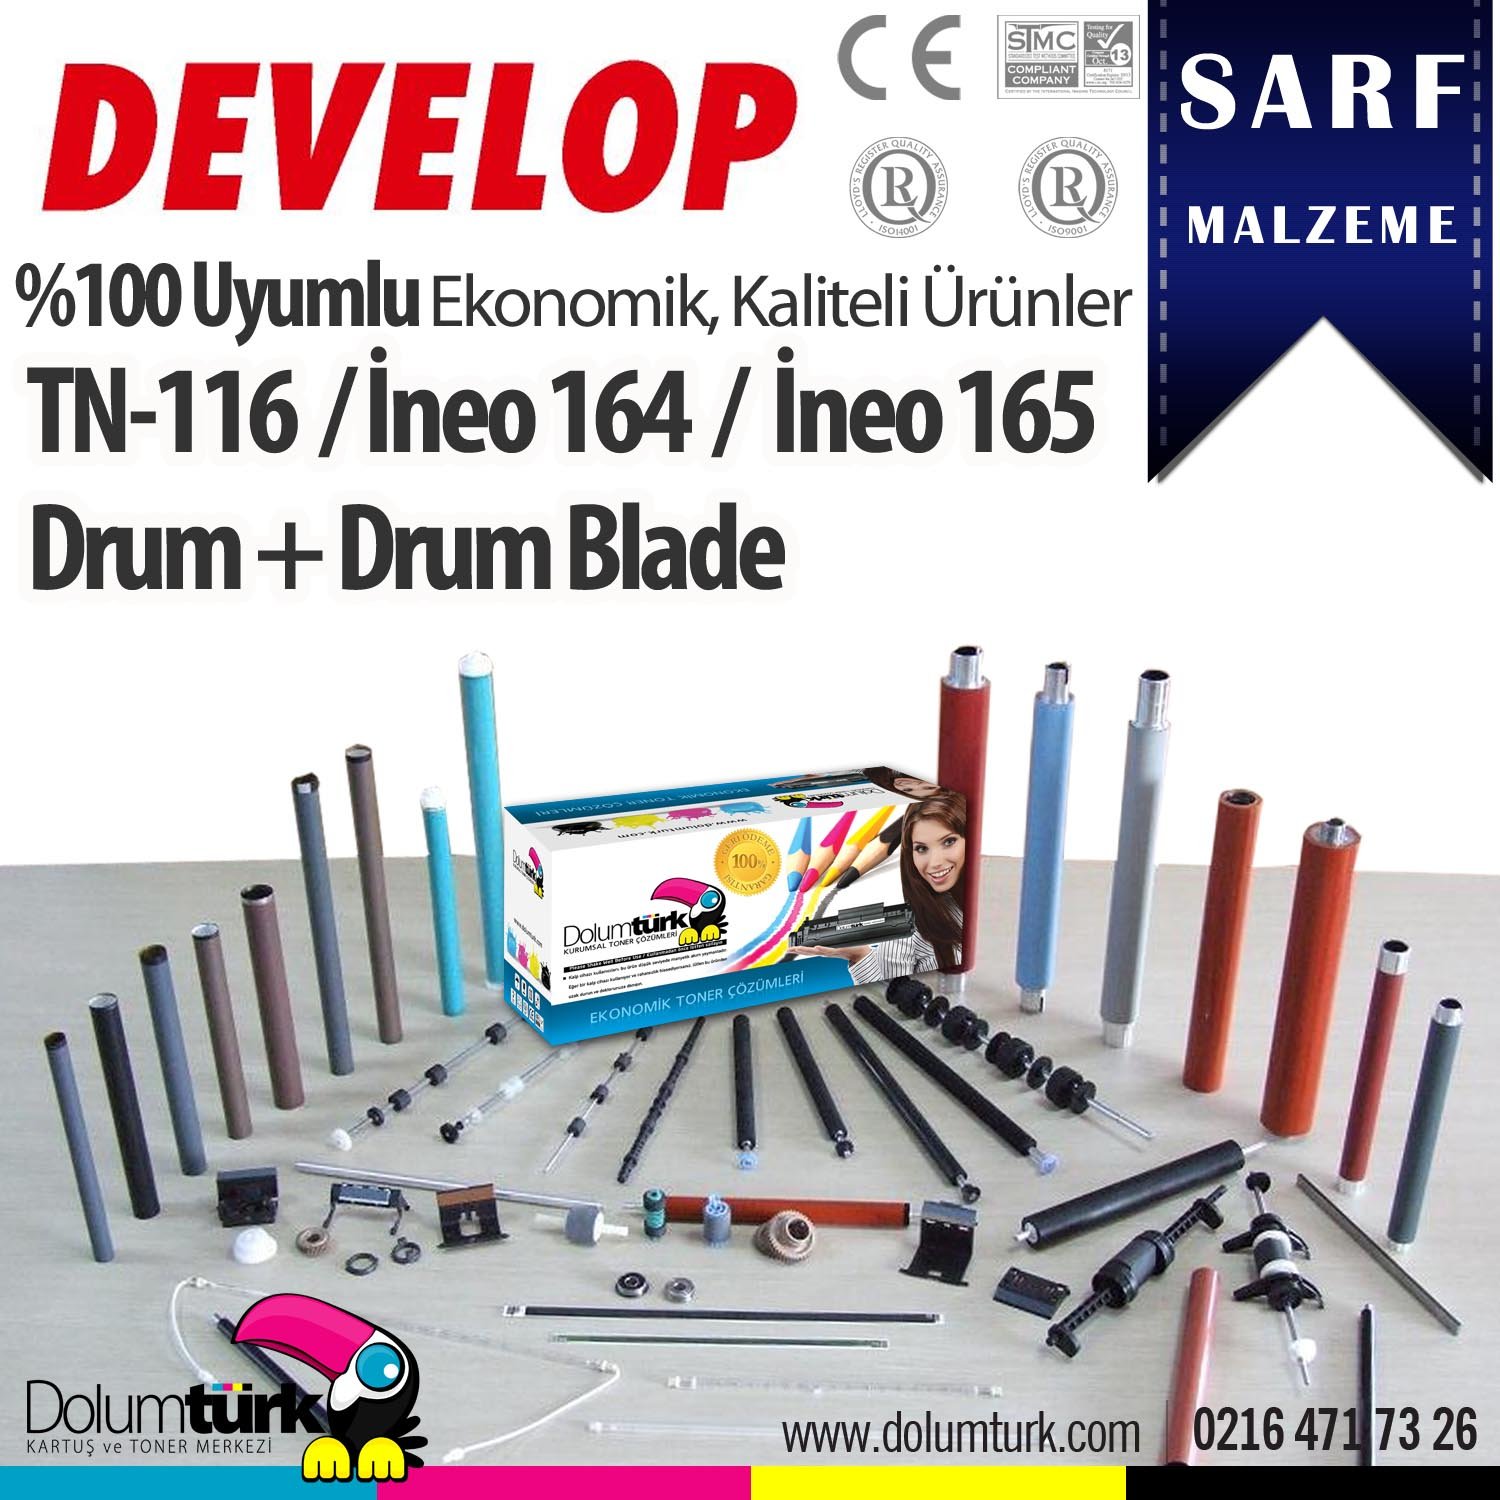 Develop TN-116 Drum + Drum Blade / Develop Ineo 164 Muadil Drum + Drum Blade